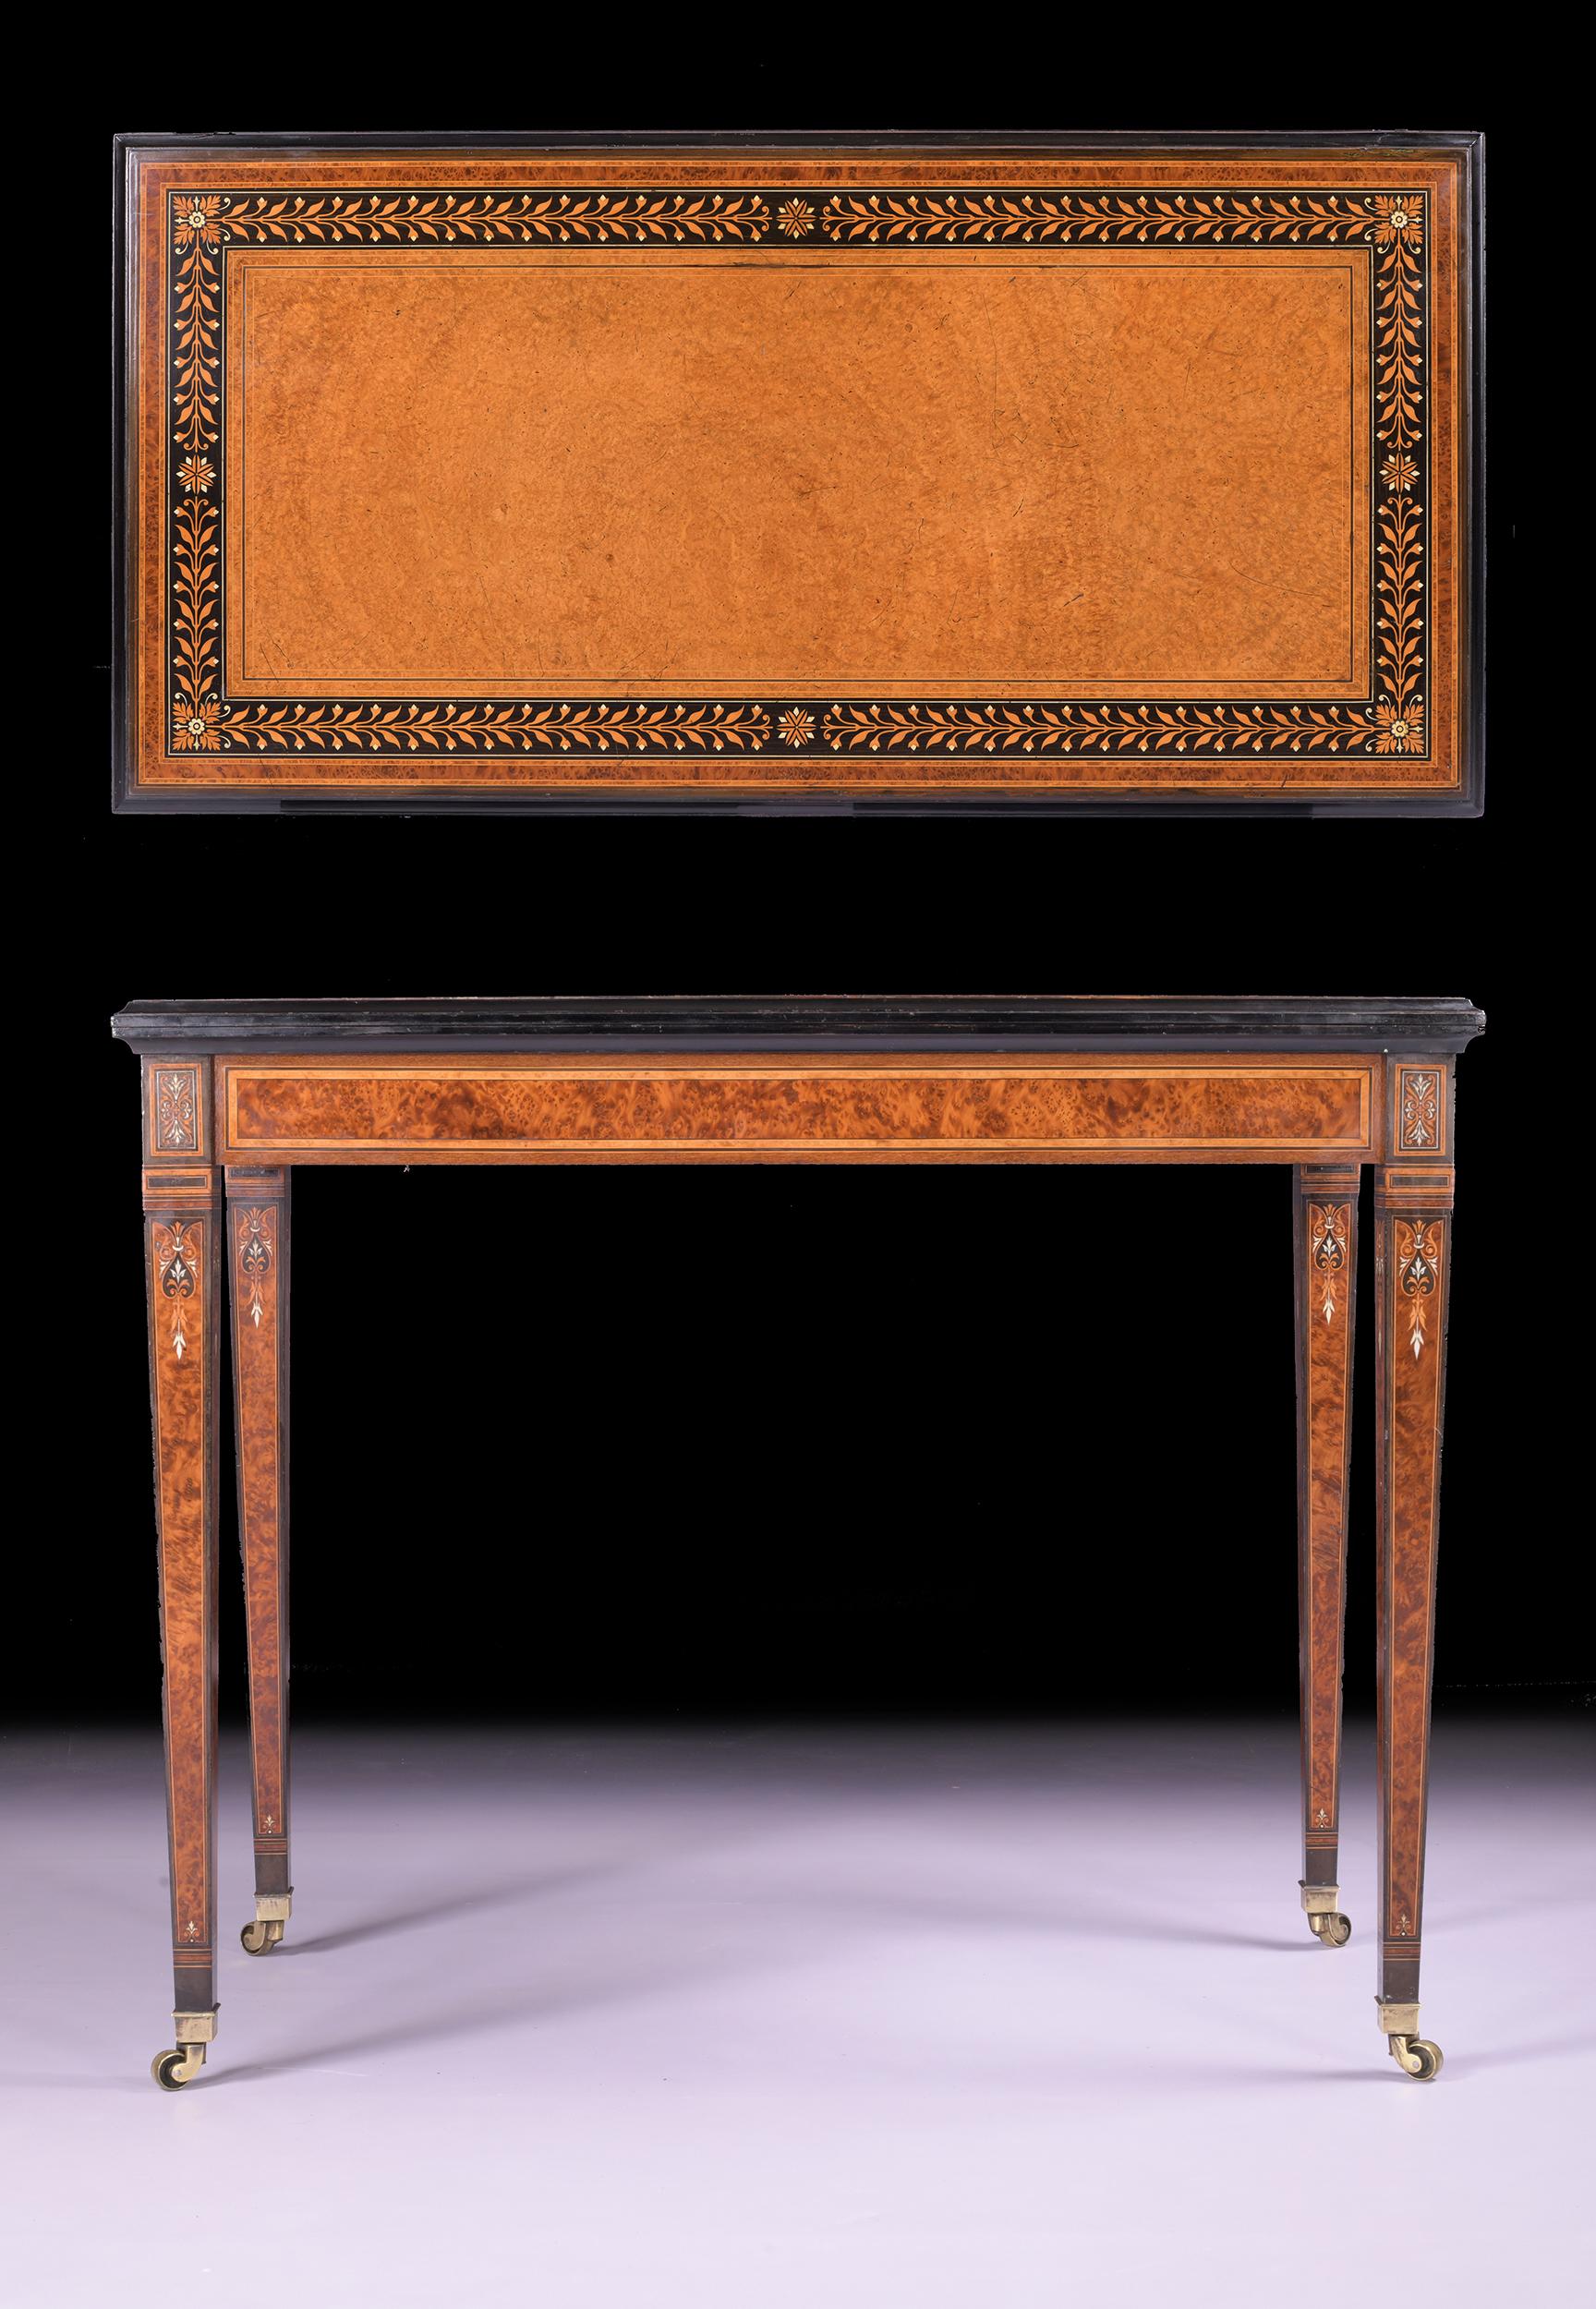 Exceptionnelle table à jeux en amboine et ébène du XIXe siècle, attribuée à Holland & Sons. Le plateau rectangulaire à charnière, décoré d'un bandeau de feuilles, s'ouvre sur une surface de jeu en baize bordeaux, au-dessus d'une frise unie reposant